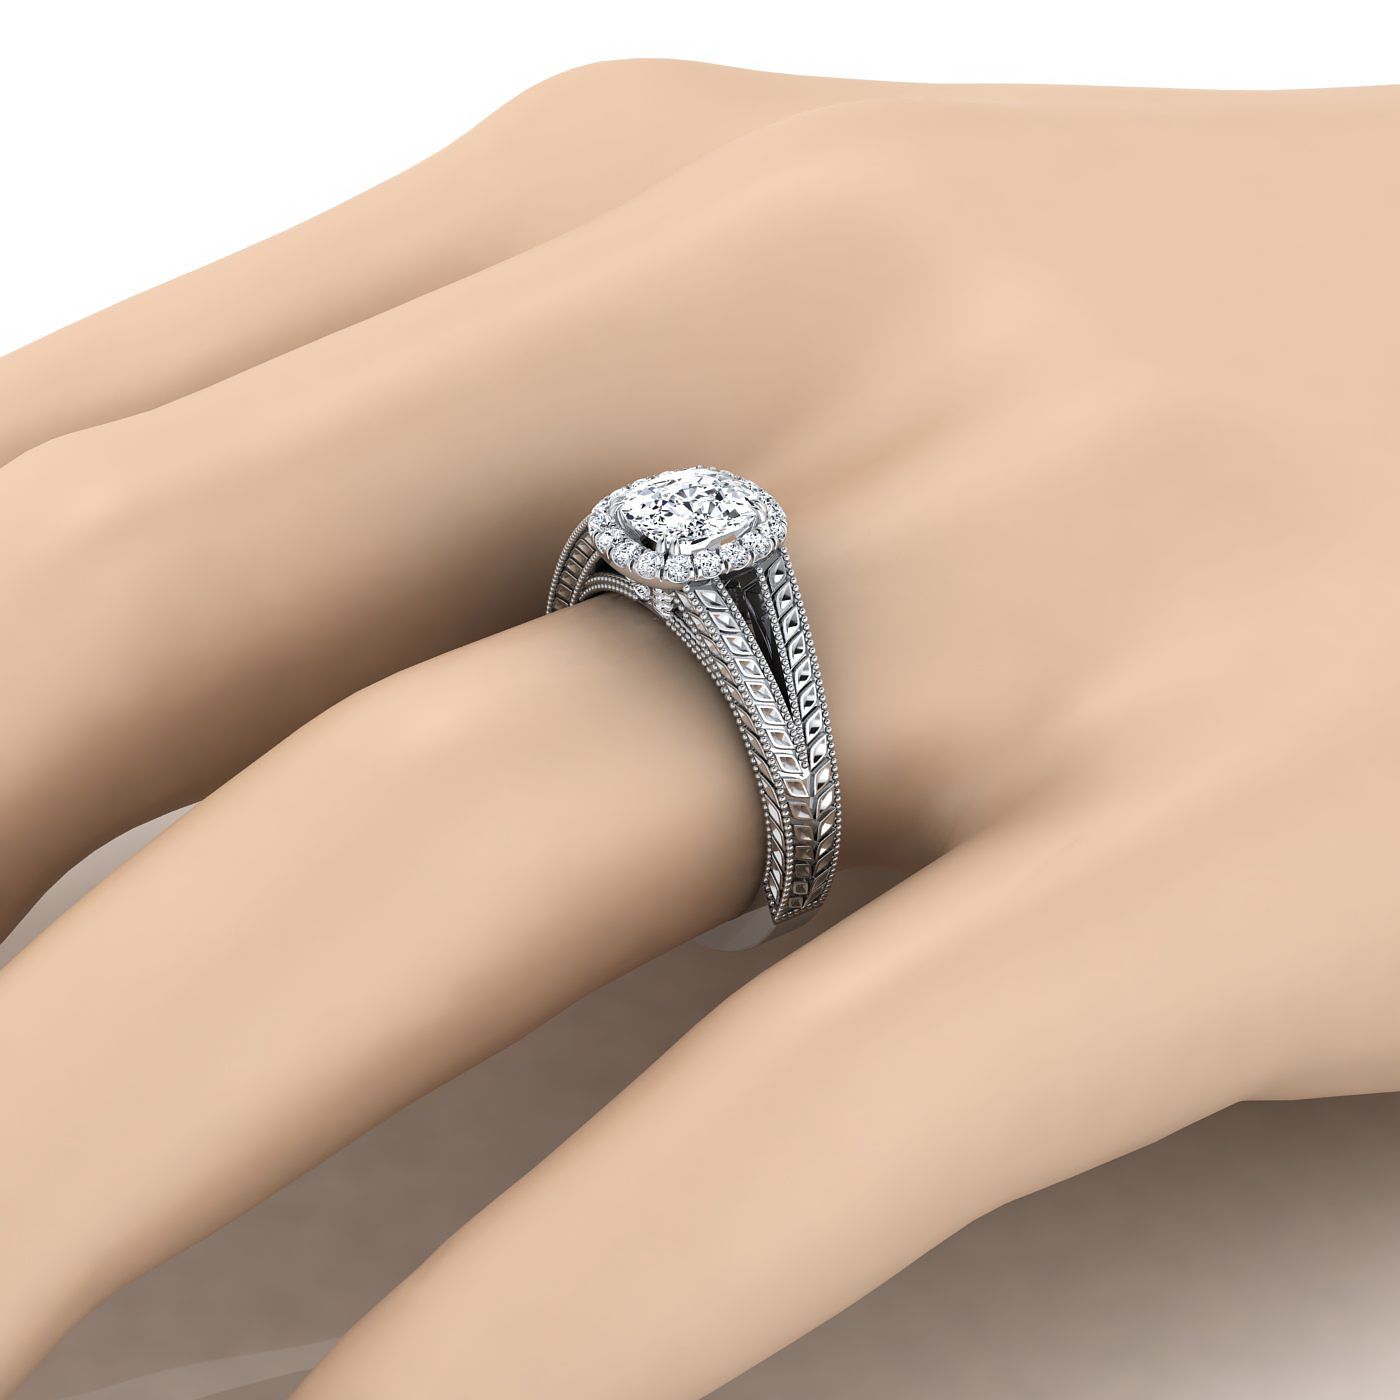 แหวนหมั้นเพชรรัศมีแหวนหมั้นเพชรแยกก้านข้าวสาลี 18K เบาะทองคำขาวแรงบันดาลใจวินเทจ